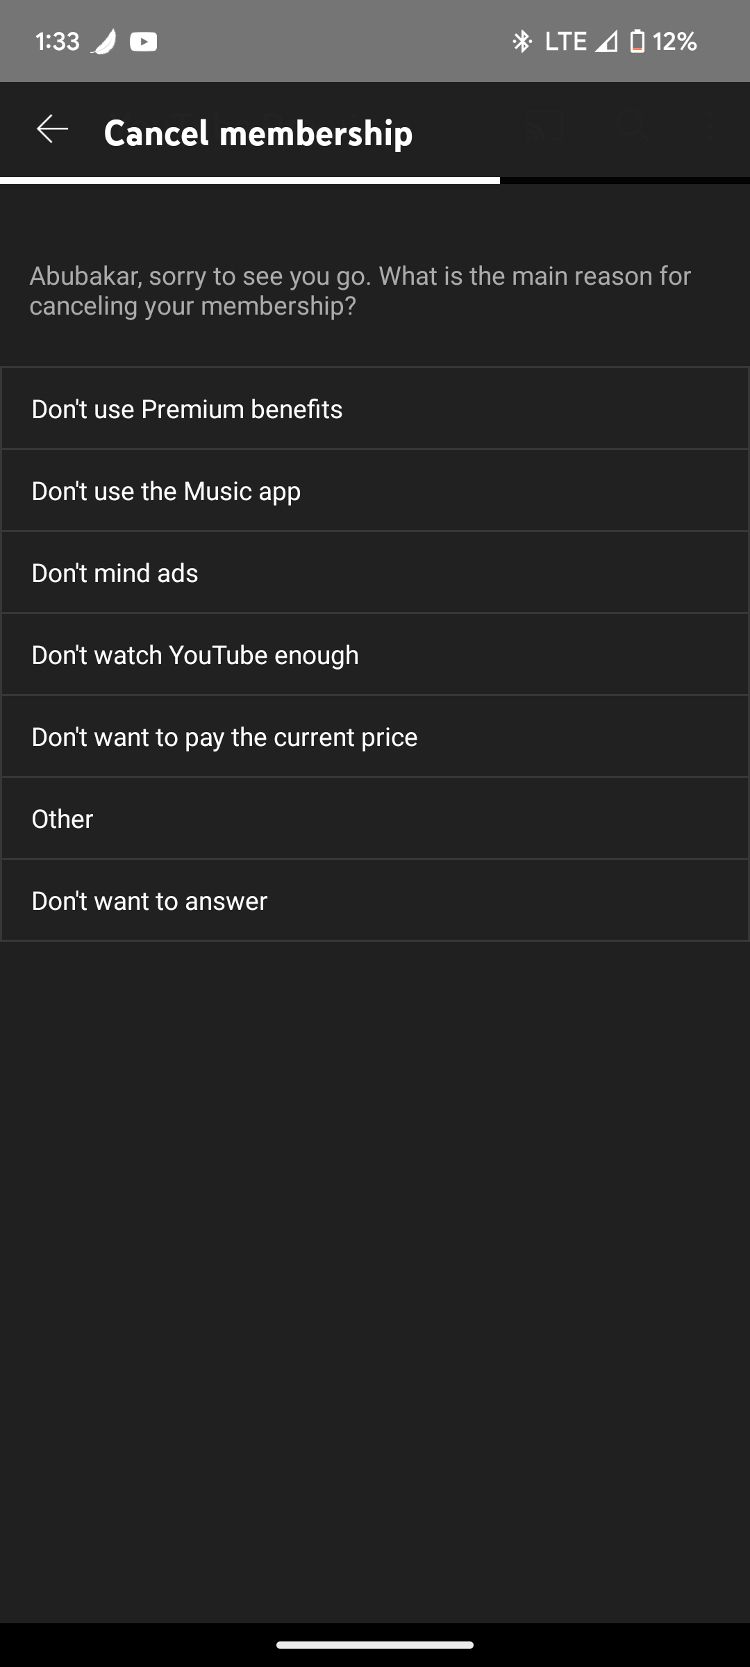 Captura de tela mostrando opções de motivos de cancelamento de assinatura premium do aplicativo YouTube